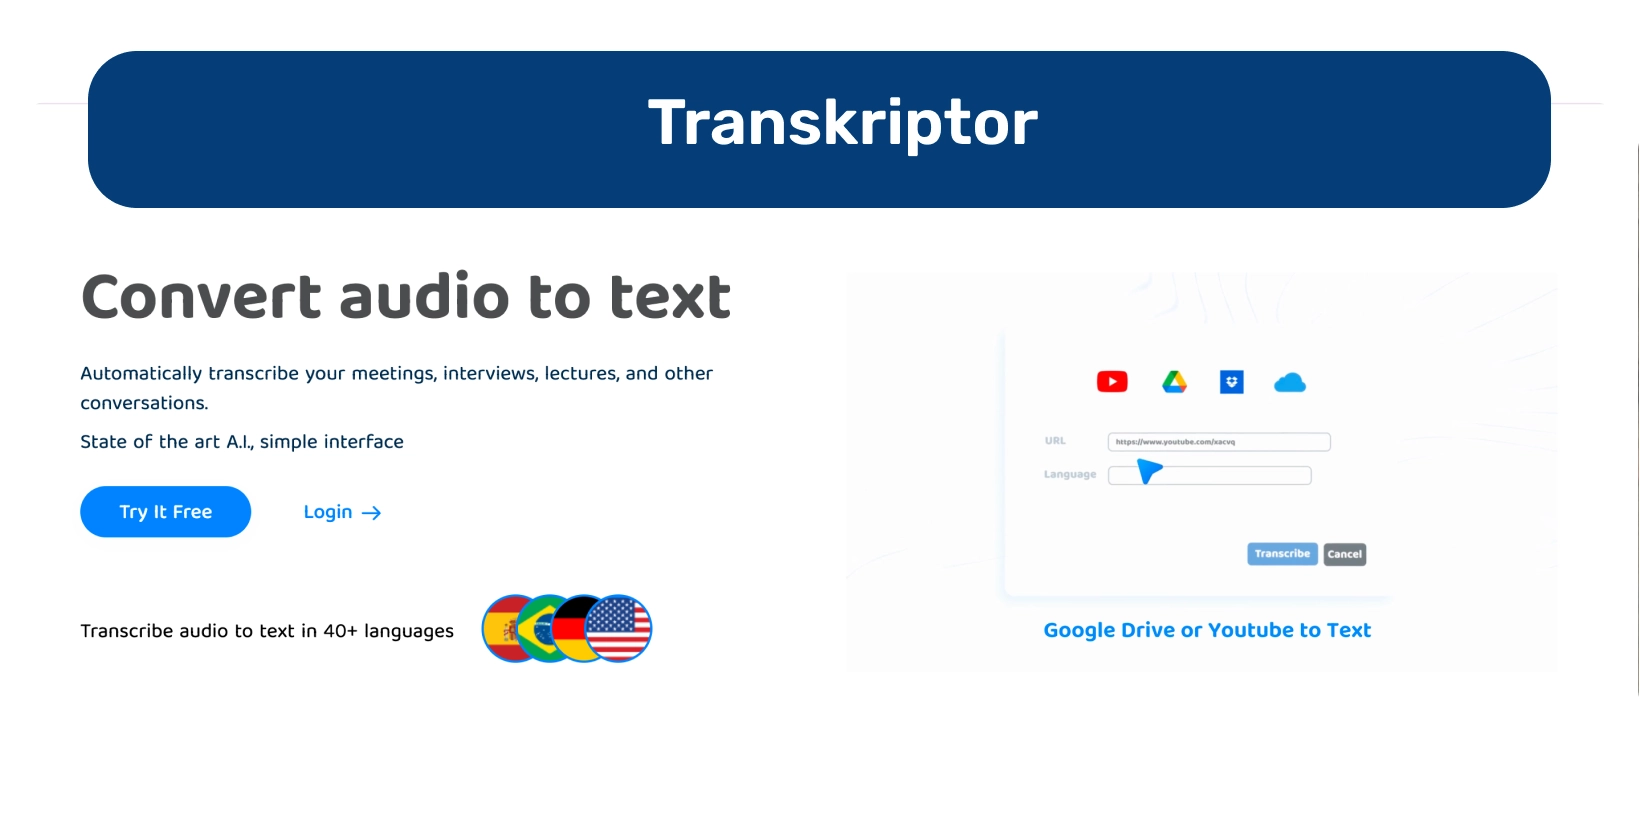 Панель управления Transkriptor, демонстрирующая функции преобразования аудио в текст для эффективной транскрипции.